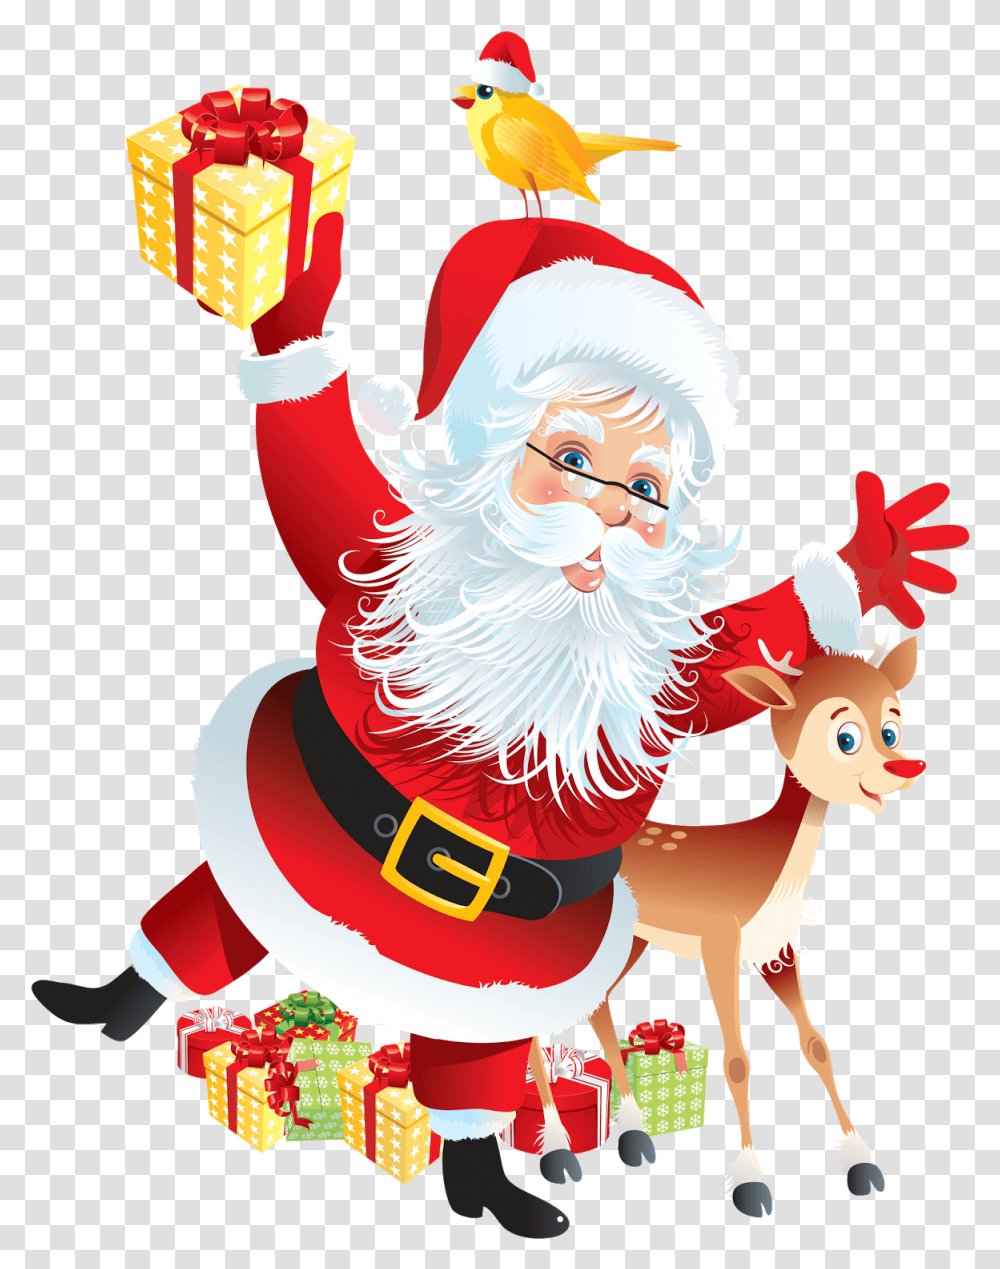 Santa And Rudolph, Bird, Elf, Tree Transparent Png